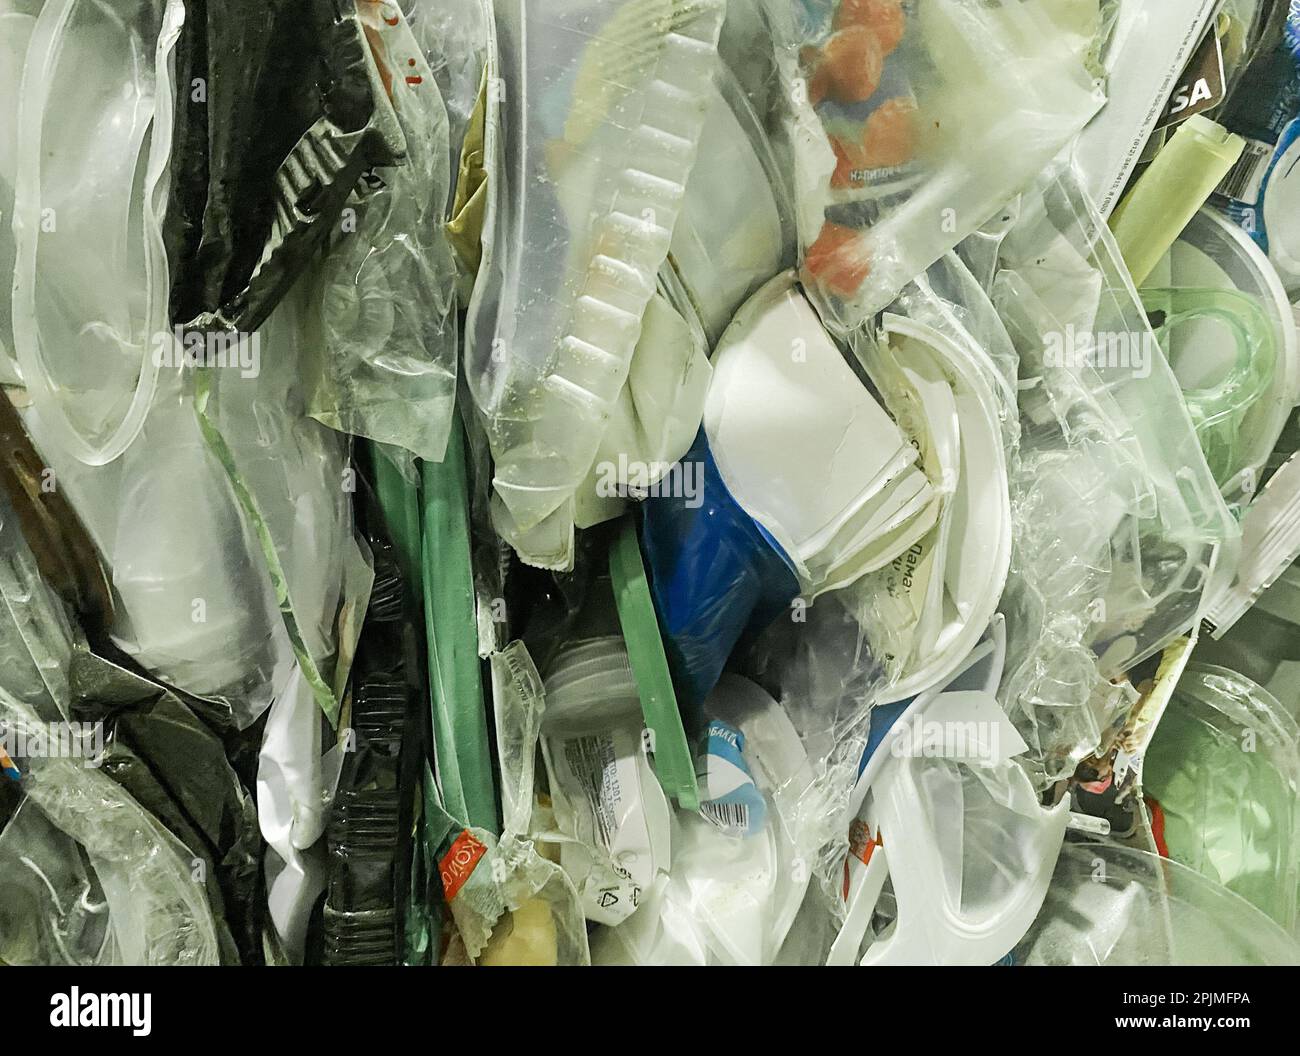 Recyclage des emballages alimentaires en plastique - bouteilles, récipients, boîtes. Consommation consciente, tri des déchets et mode de vie durable. Banque D'Images